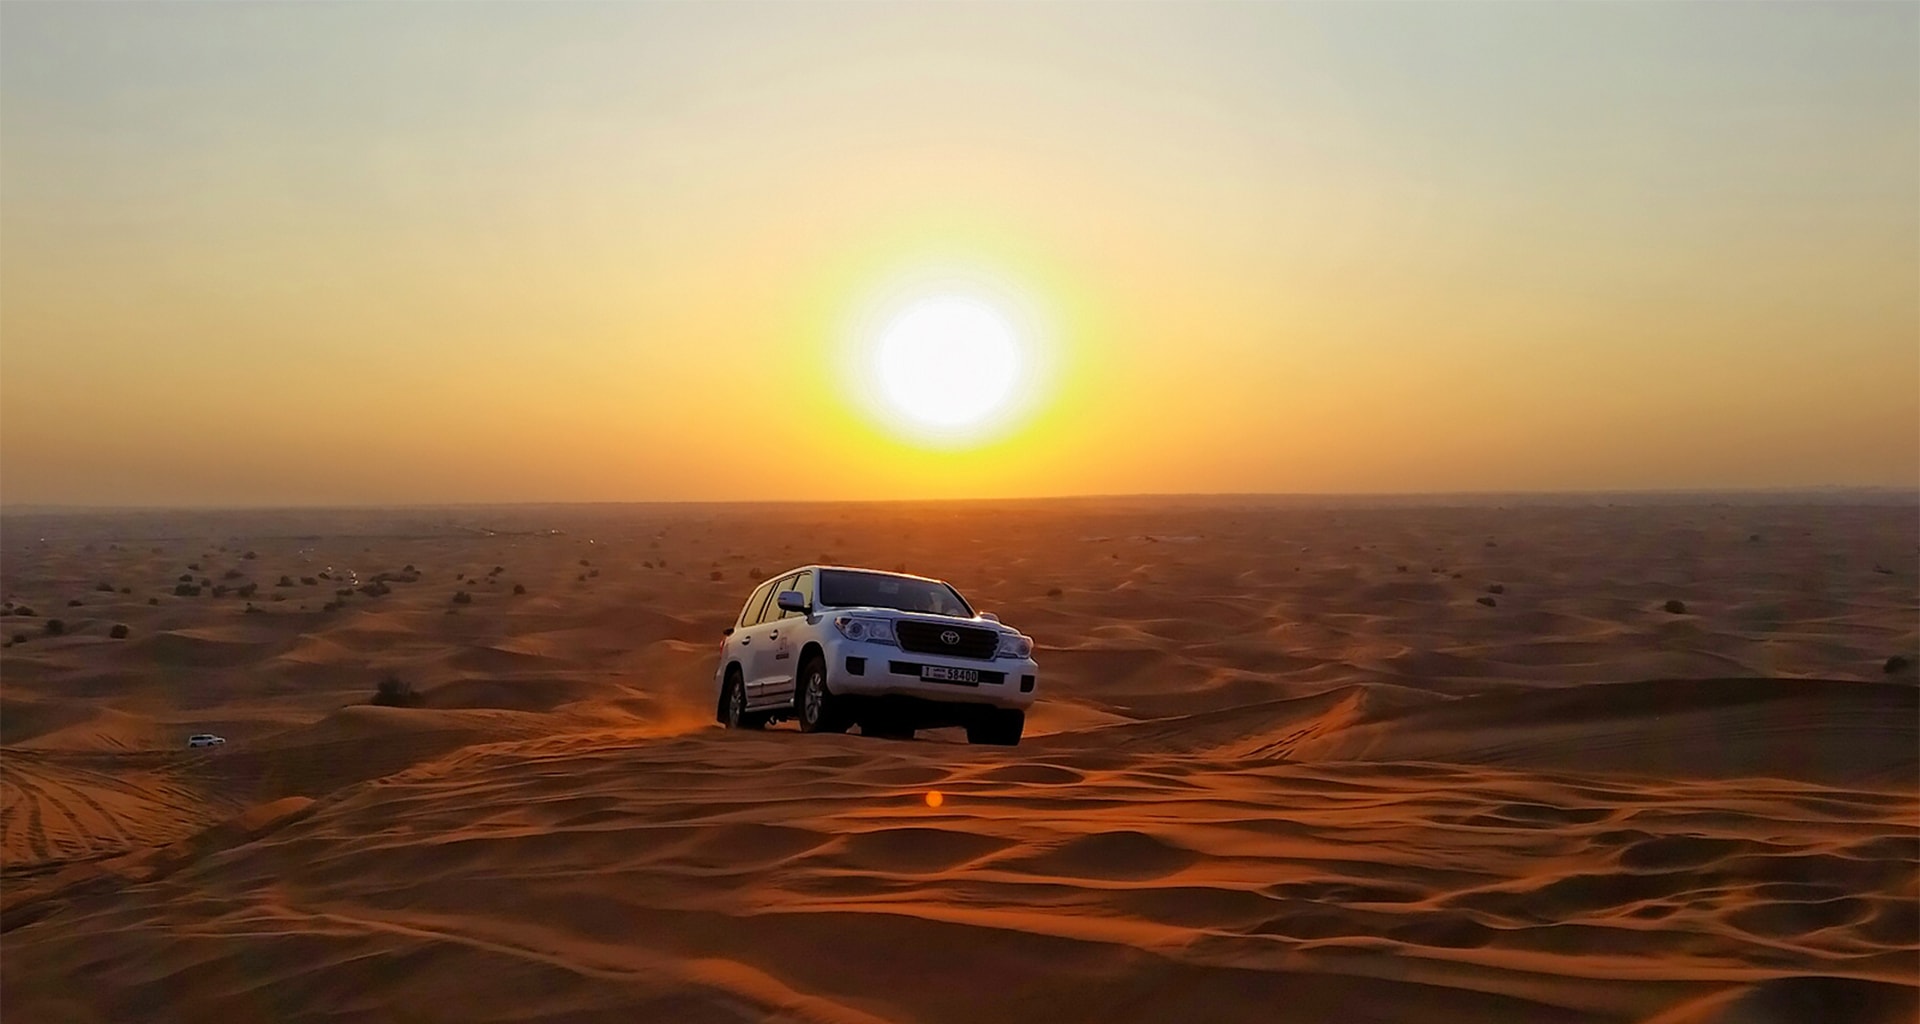 Morning Desert Safari In Dubai Overview